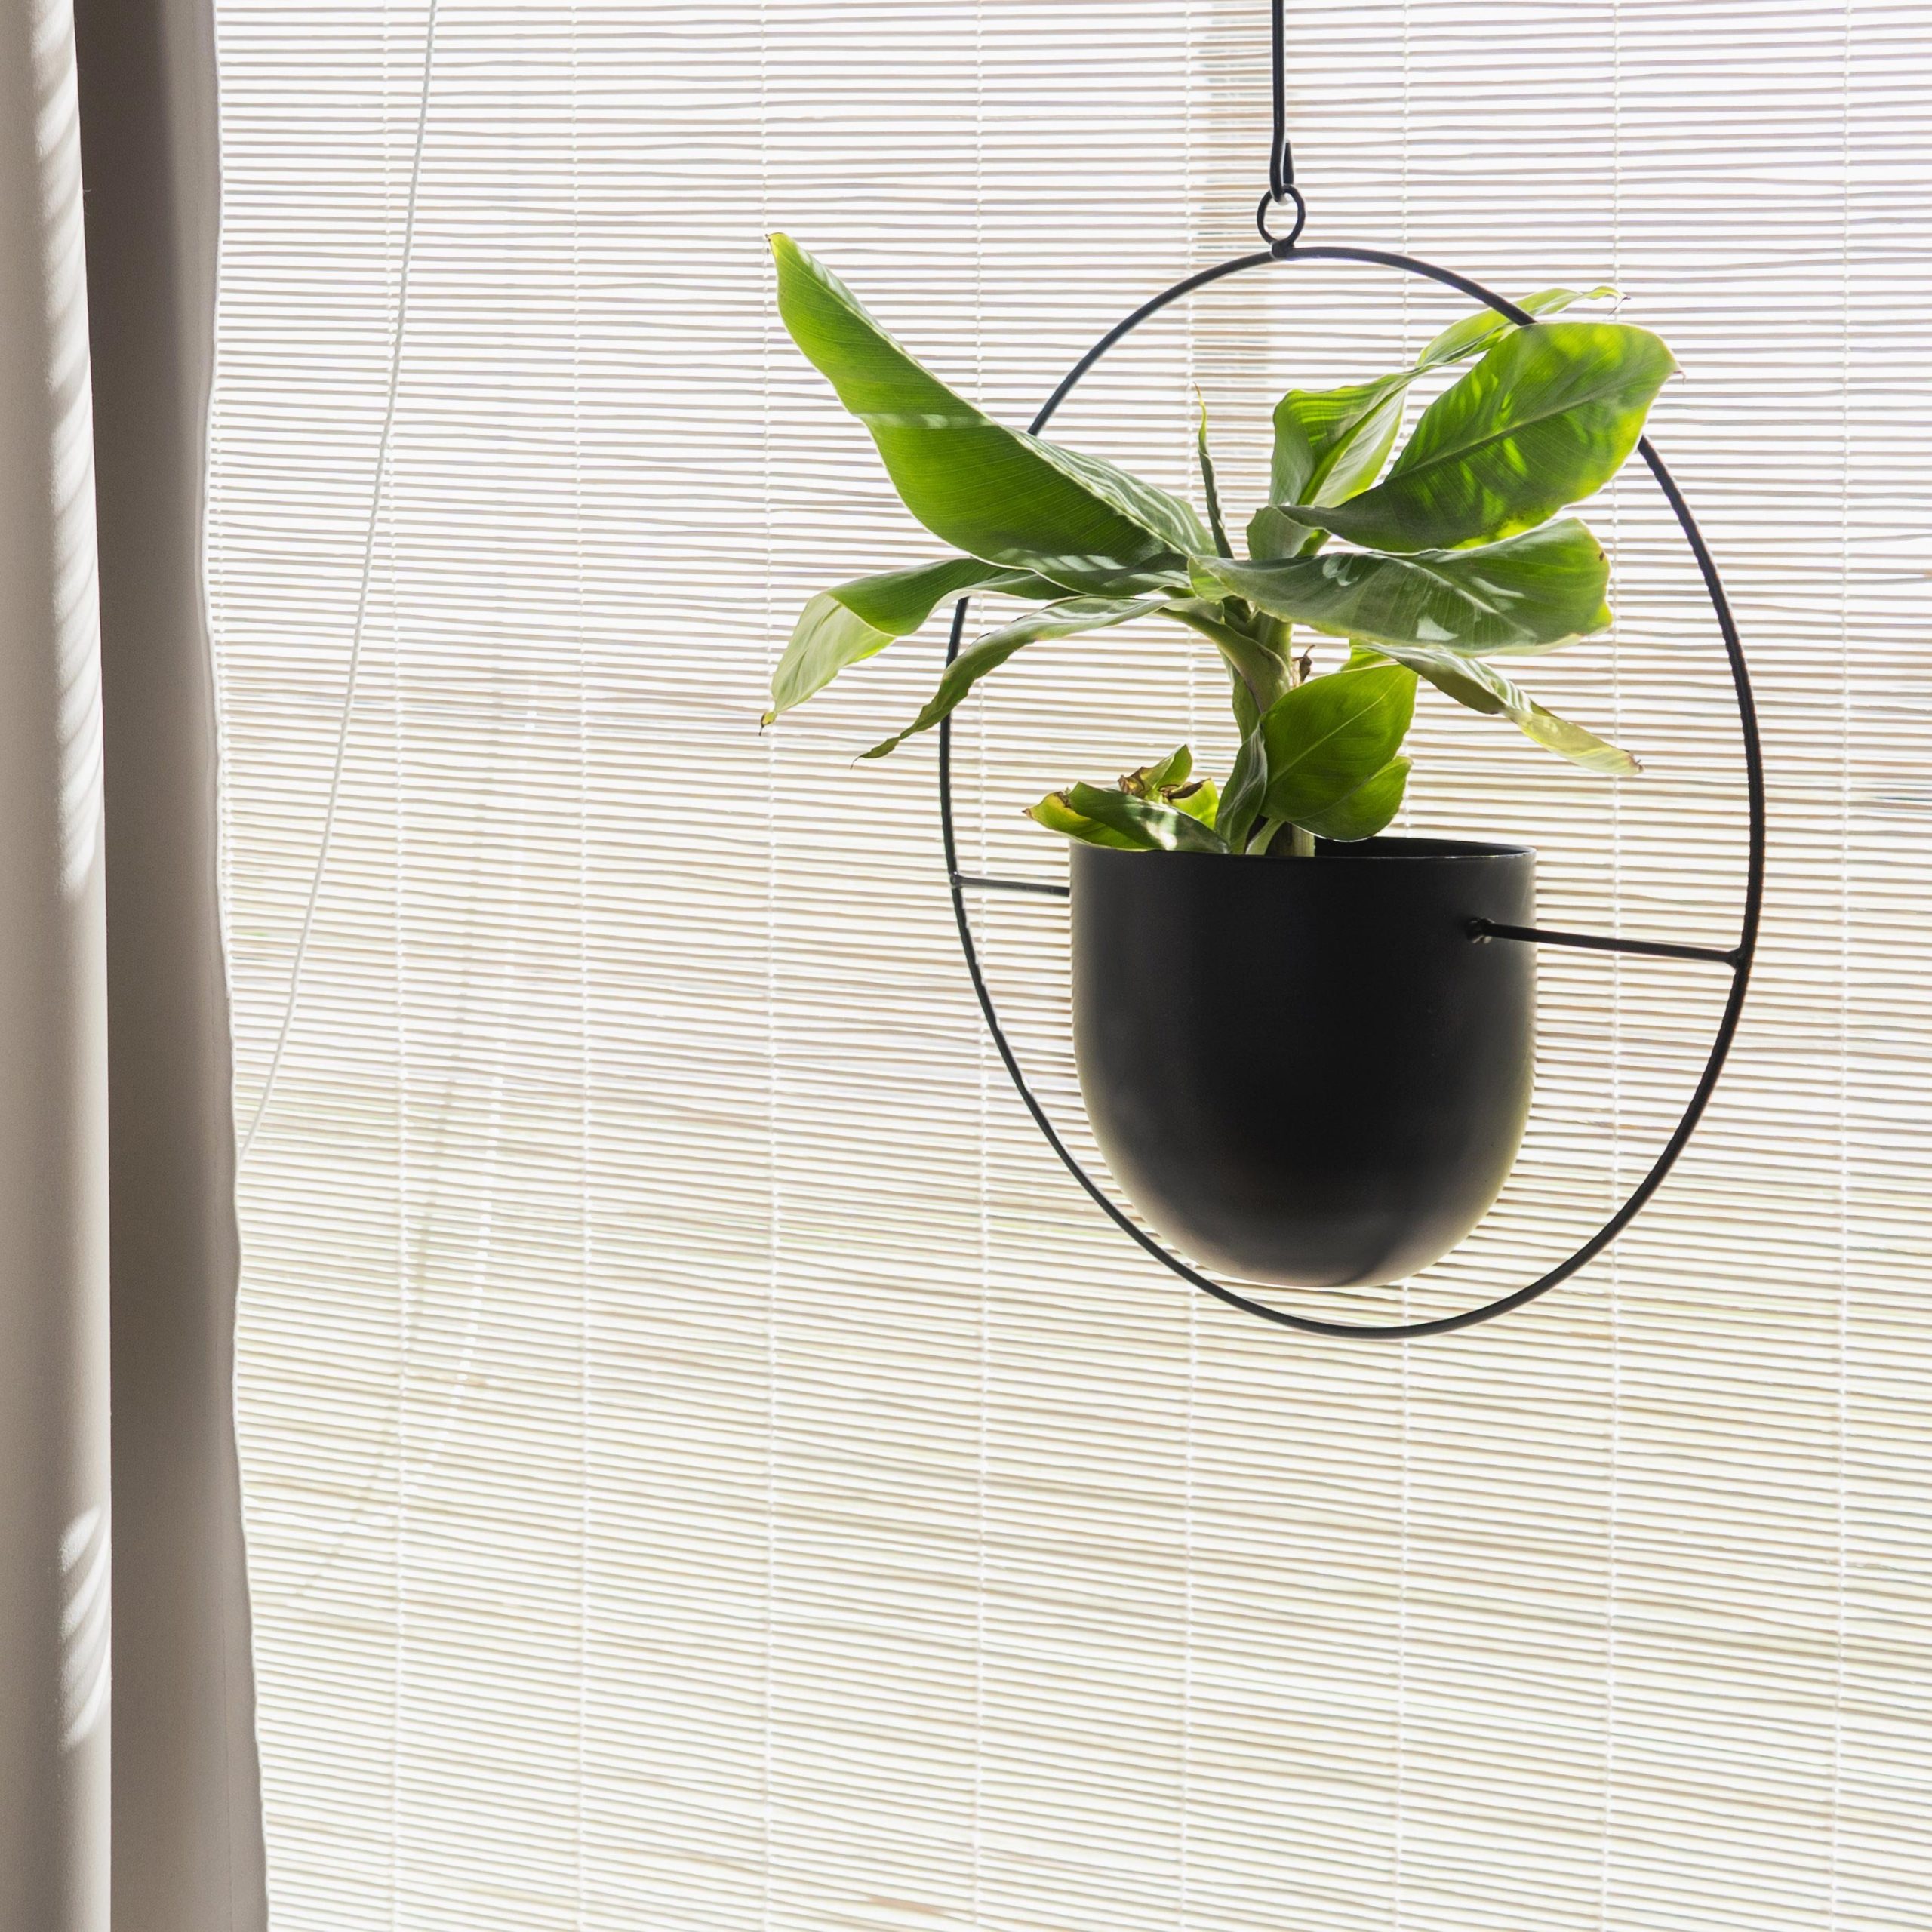 Met de juiste zorg en aandacht kan je zelfs een Dwergbanaanplant ophangen. Hier in combinatie met een mooie zwarte metalen planthanger.